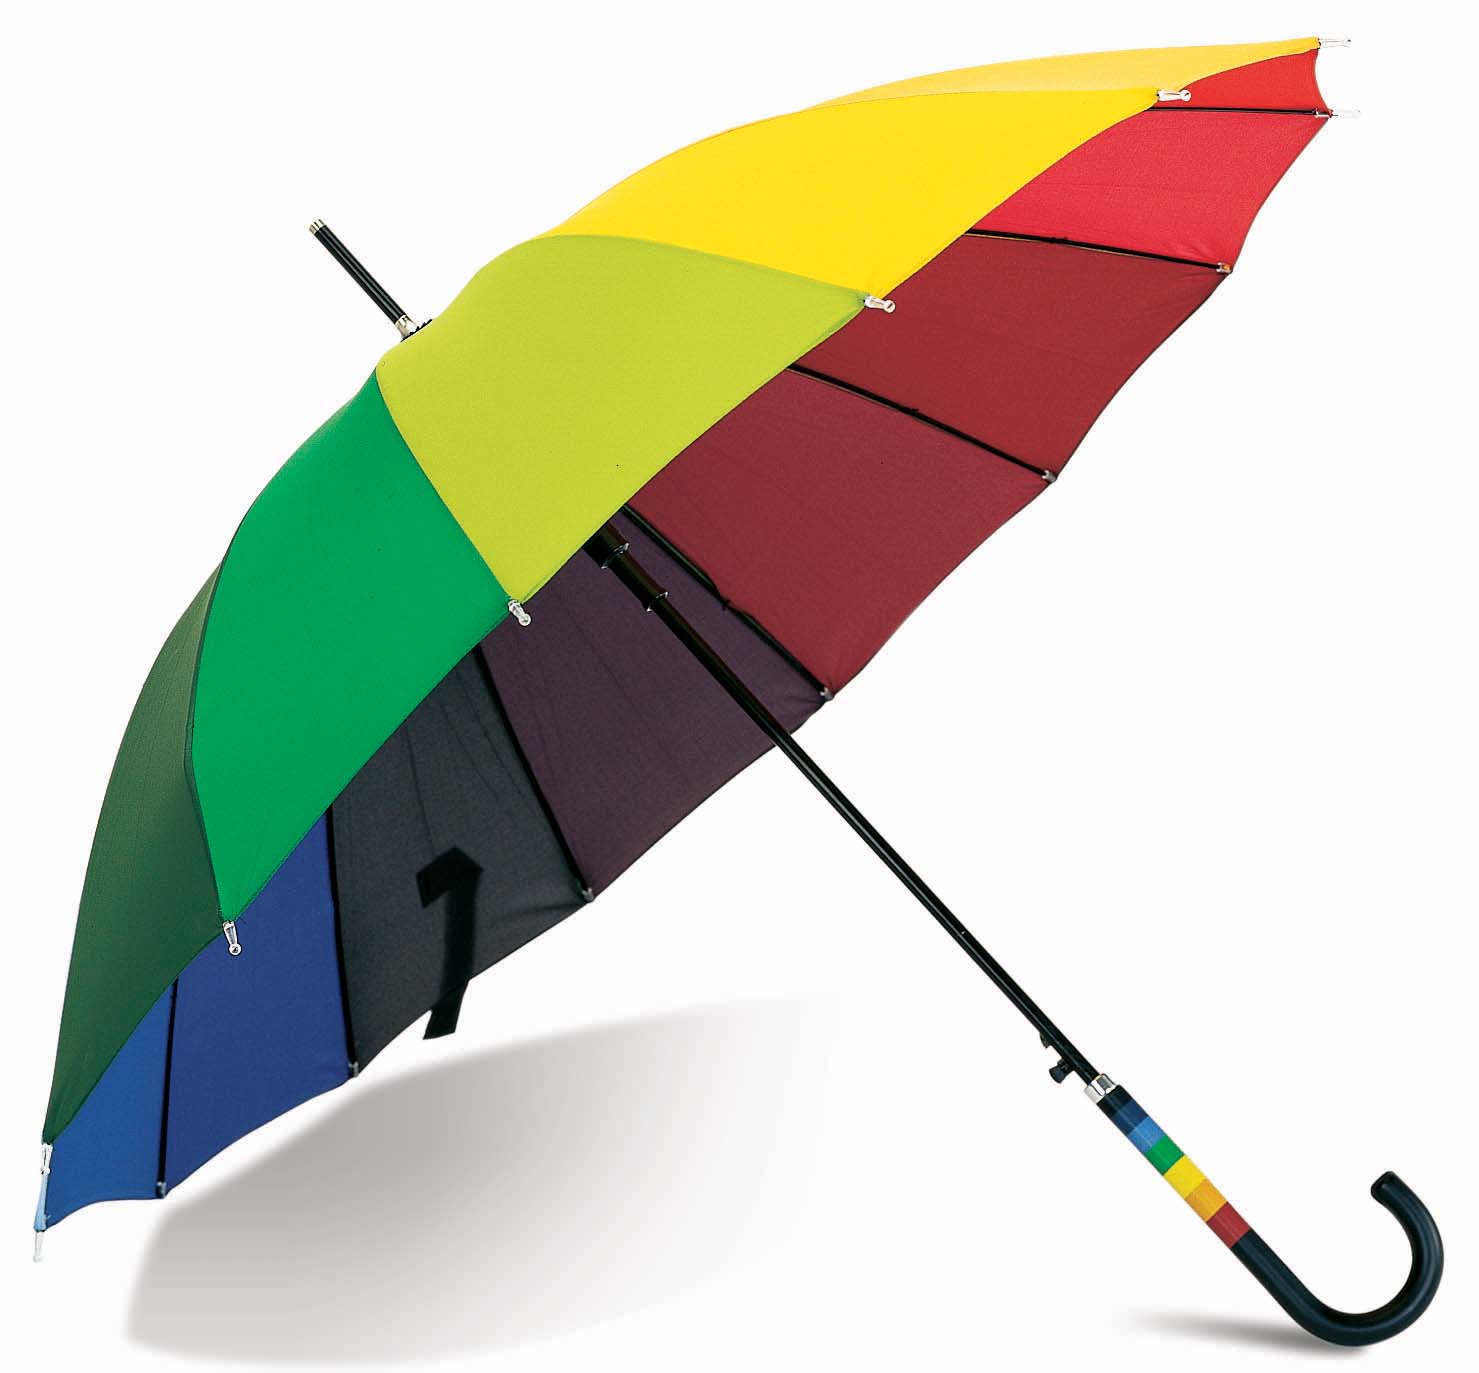 Umbrella mistaken for assault rifle